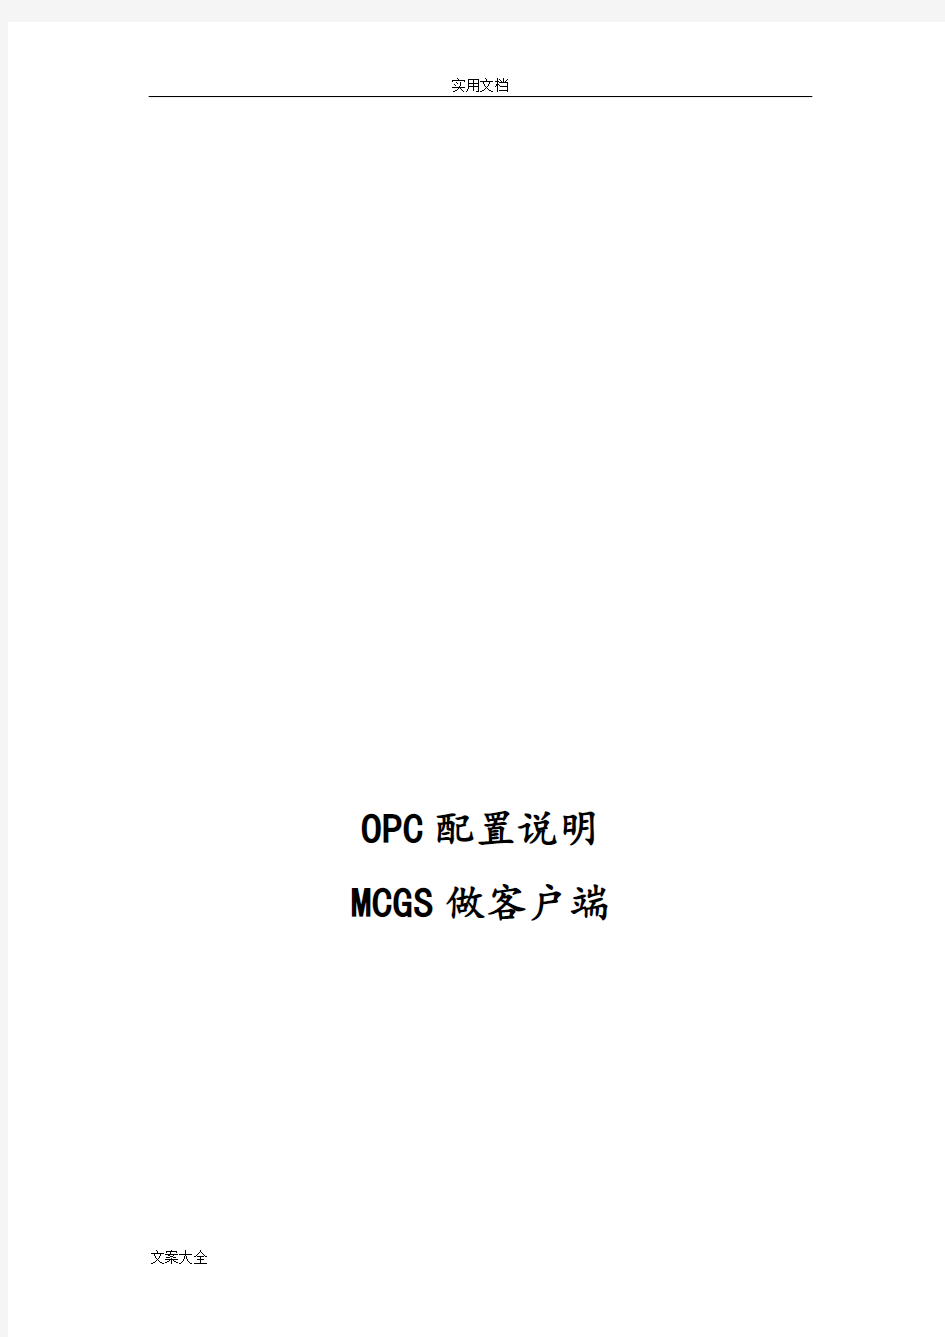 OPC通讯配置说明书-MCGS做客户端